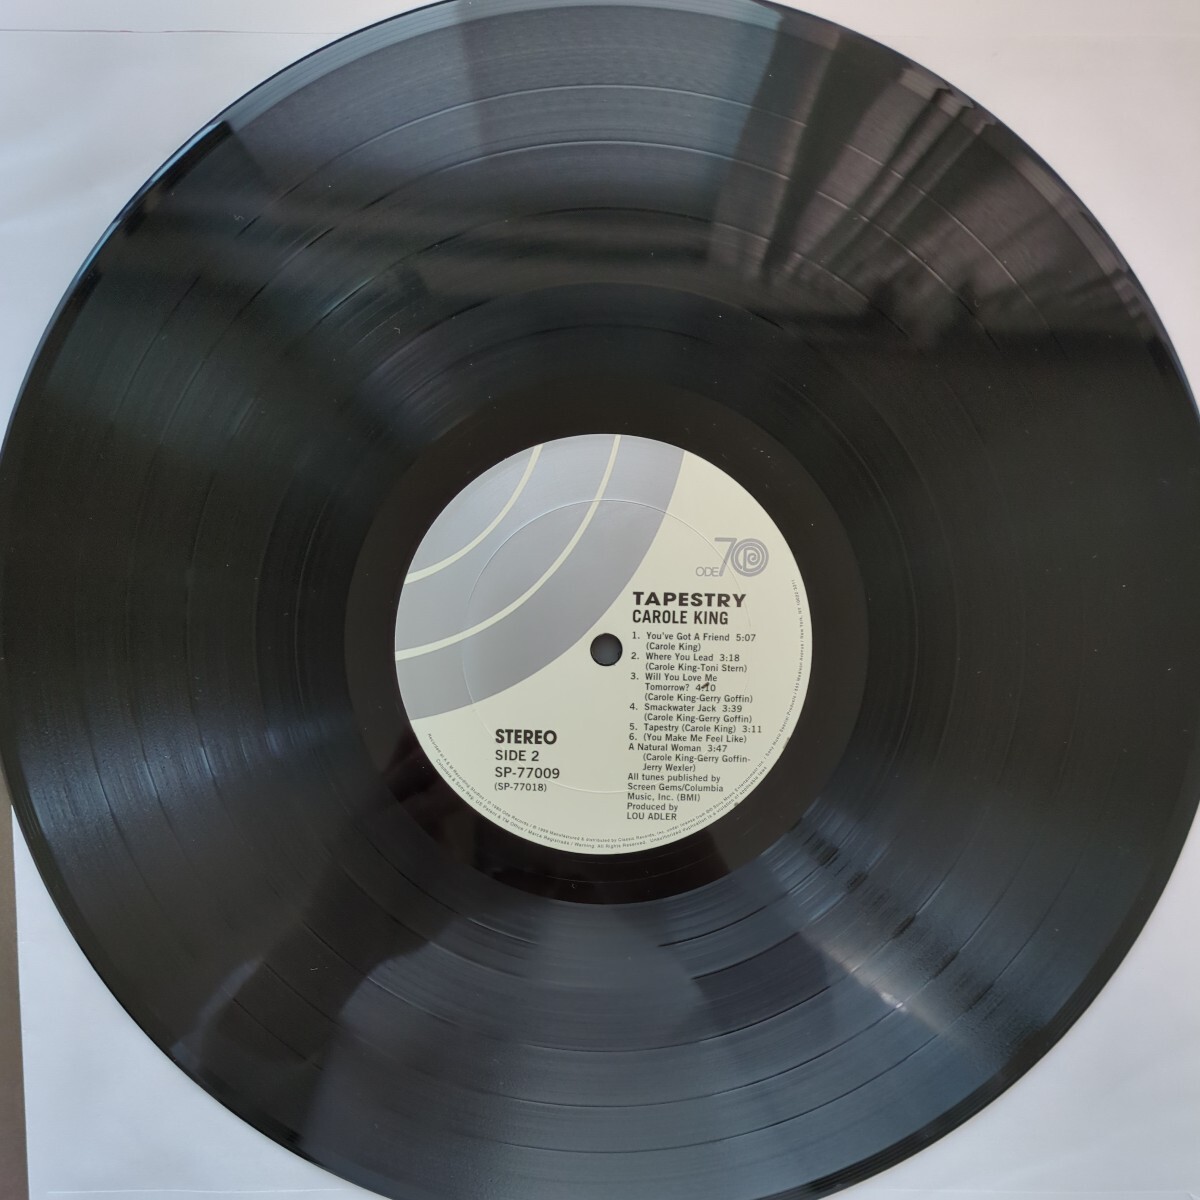 高音質 classic records Quiex-SVP BG carole king tapestry キャロル・キング つずれおり US盤 recordレコード LP アナログ vinyl _画像9